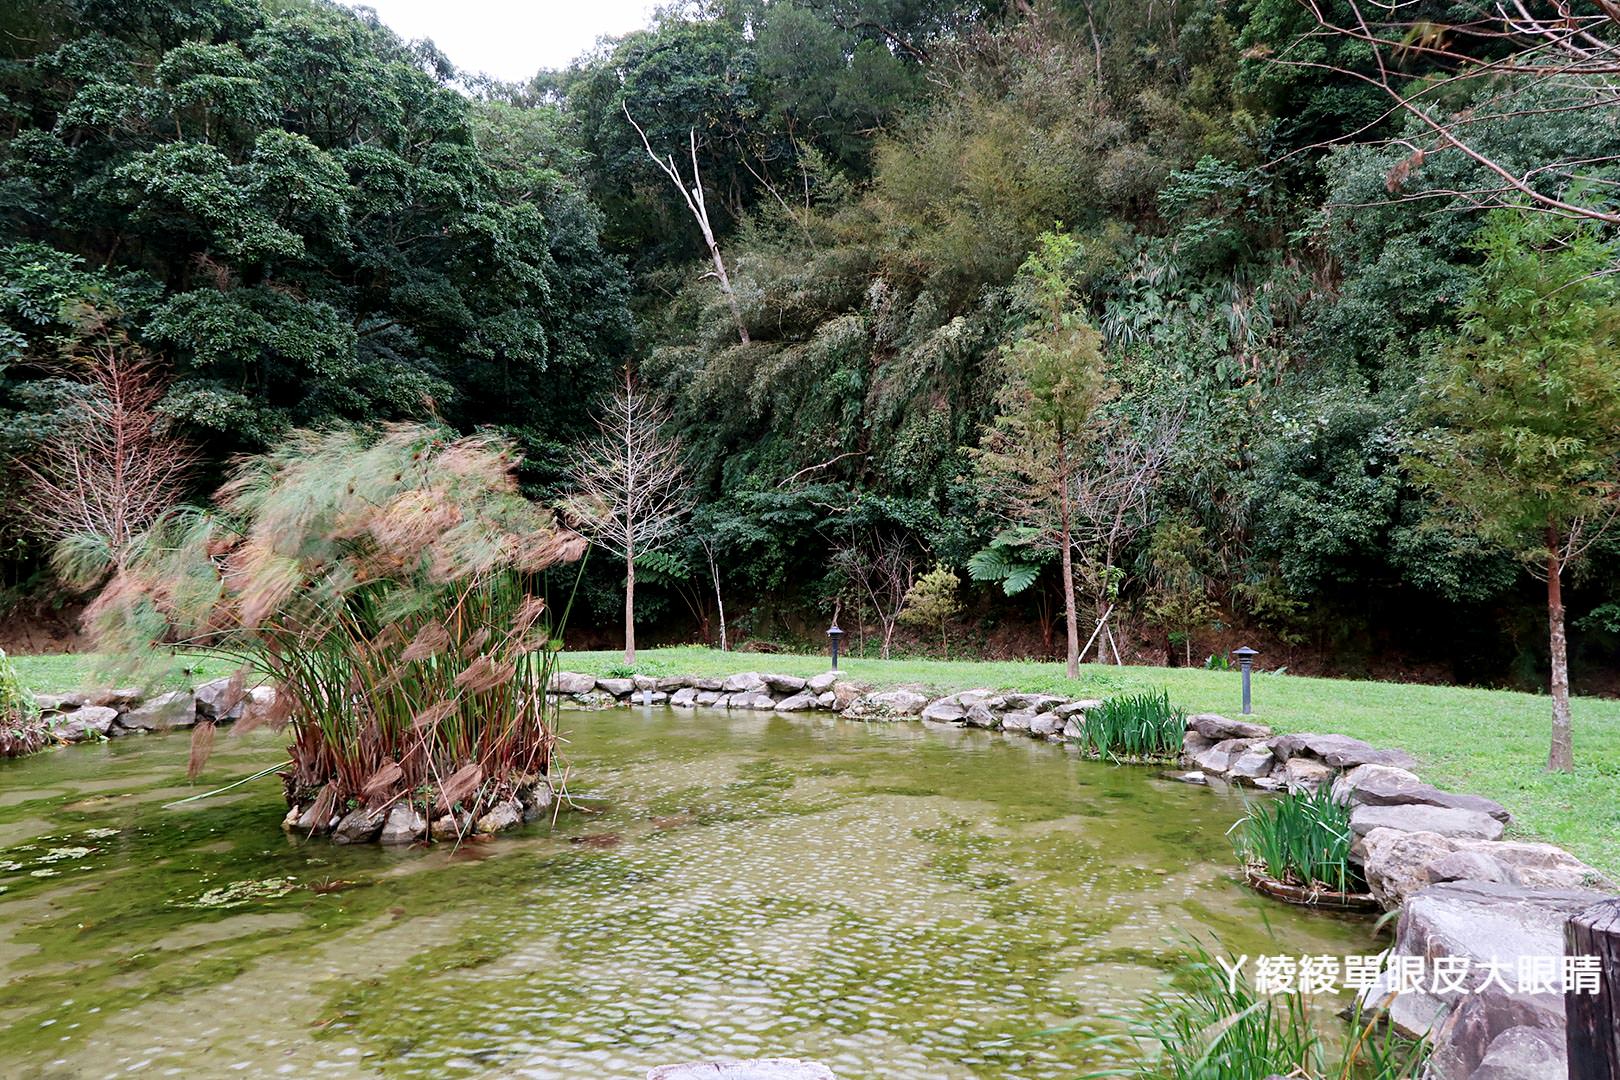 新竹旅遊景點心鮮森林八月份起暫停對外開放！放假來遊玩的旅客們注意別撲空